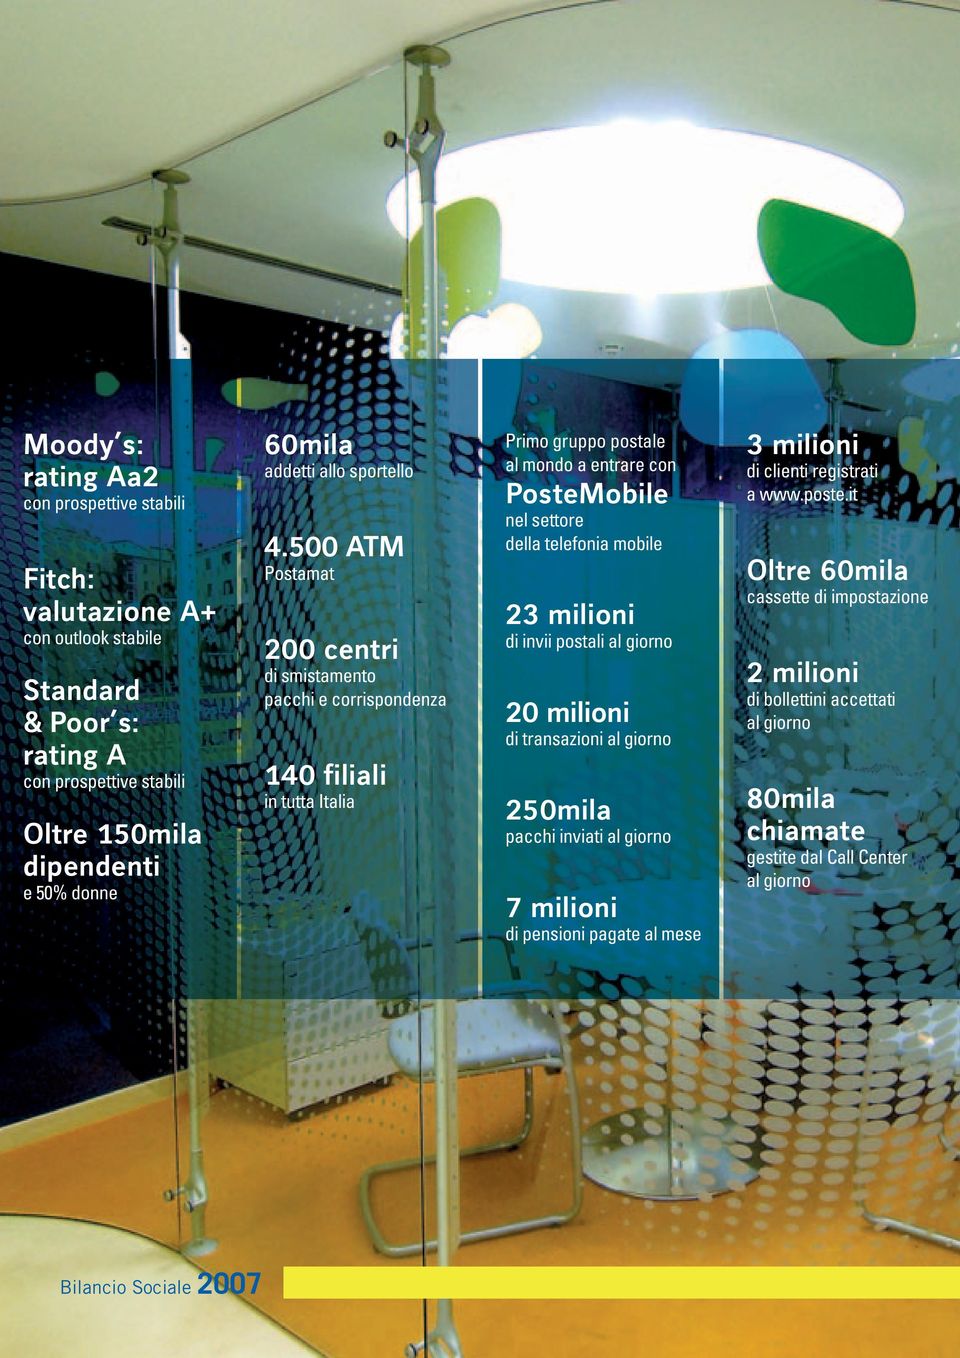 500 ATM Postamat 200 centri di smistamento pacchi e corrispondenza 140 filiali in tutta Italia Primo gruppo postale al mondo a entrare con PosteMobile nel settore della telefonia